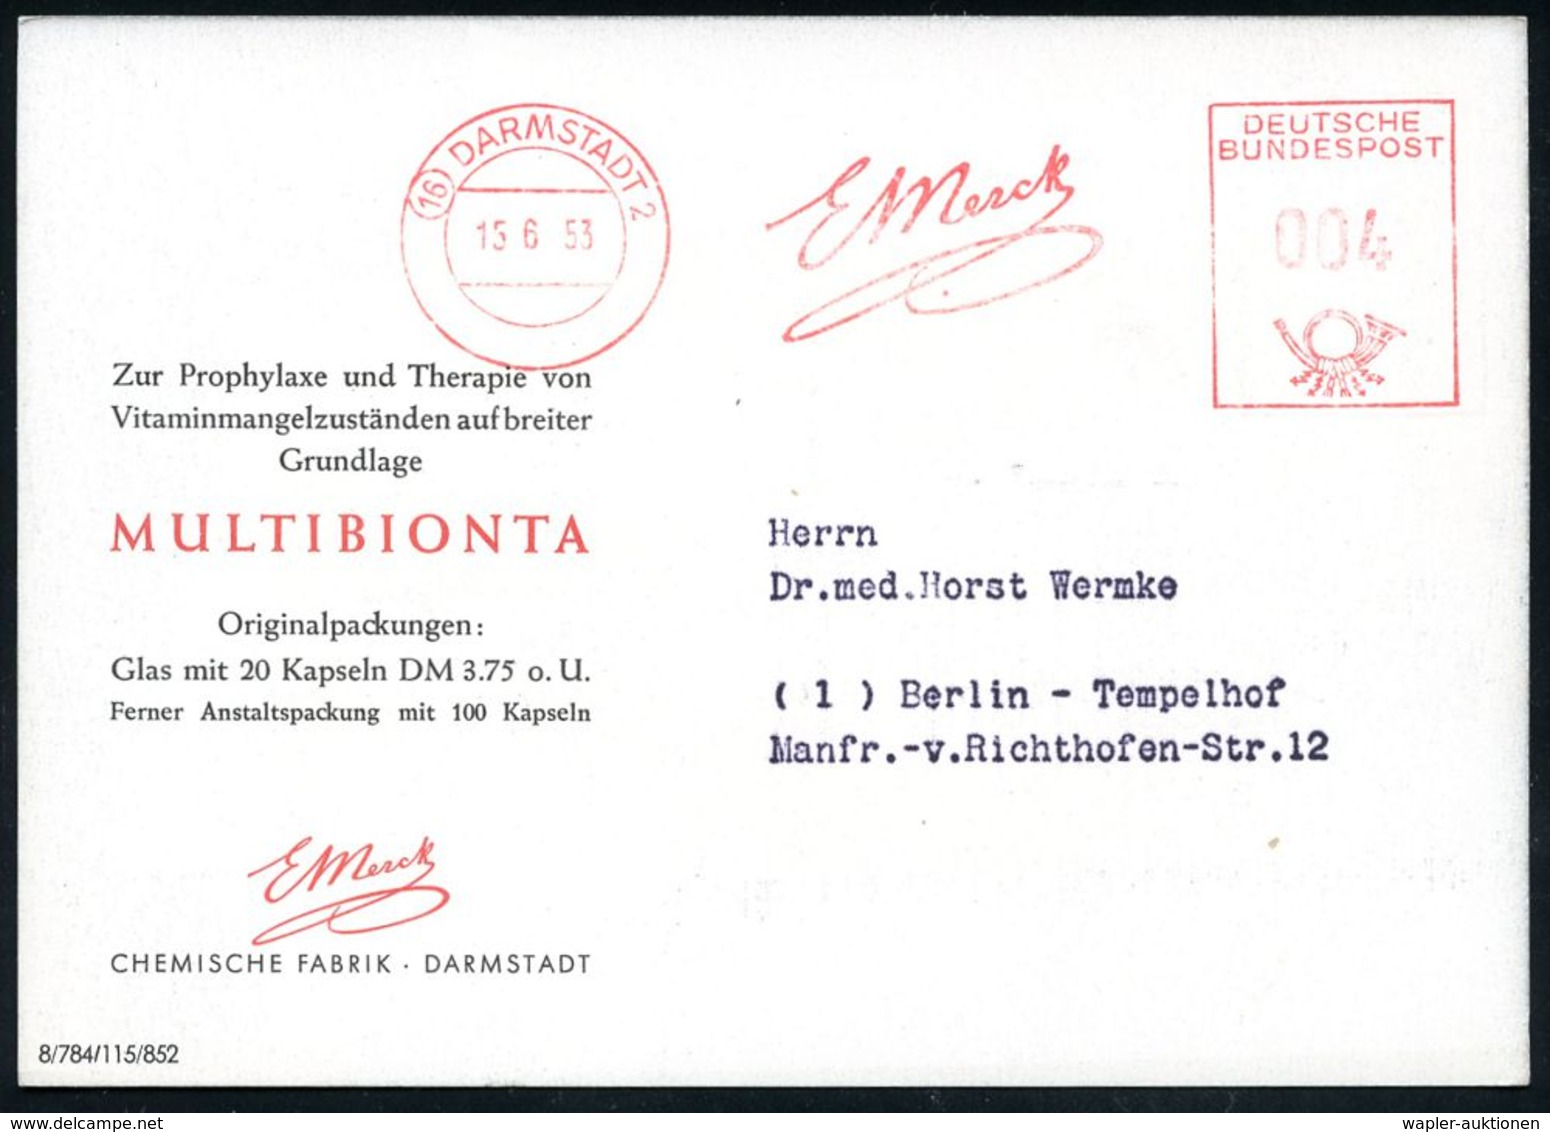 PHARMAZIE / MEDIKAMENTE : (16) DARMSTADT 2/ E Merck 1953 (15.6.) AFS Auf Color-Reklame-Kt.: Multibionta.. Vitamin-Präpar - Pharmacie